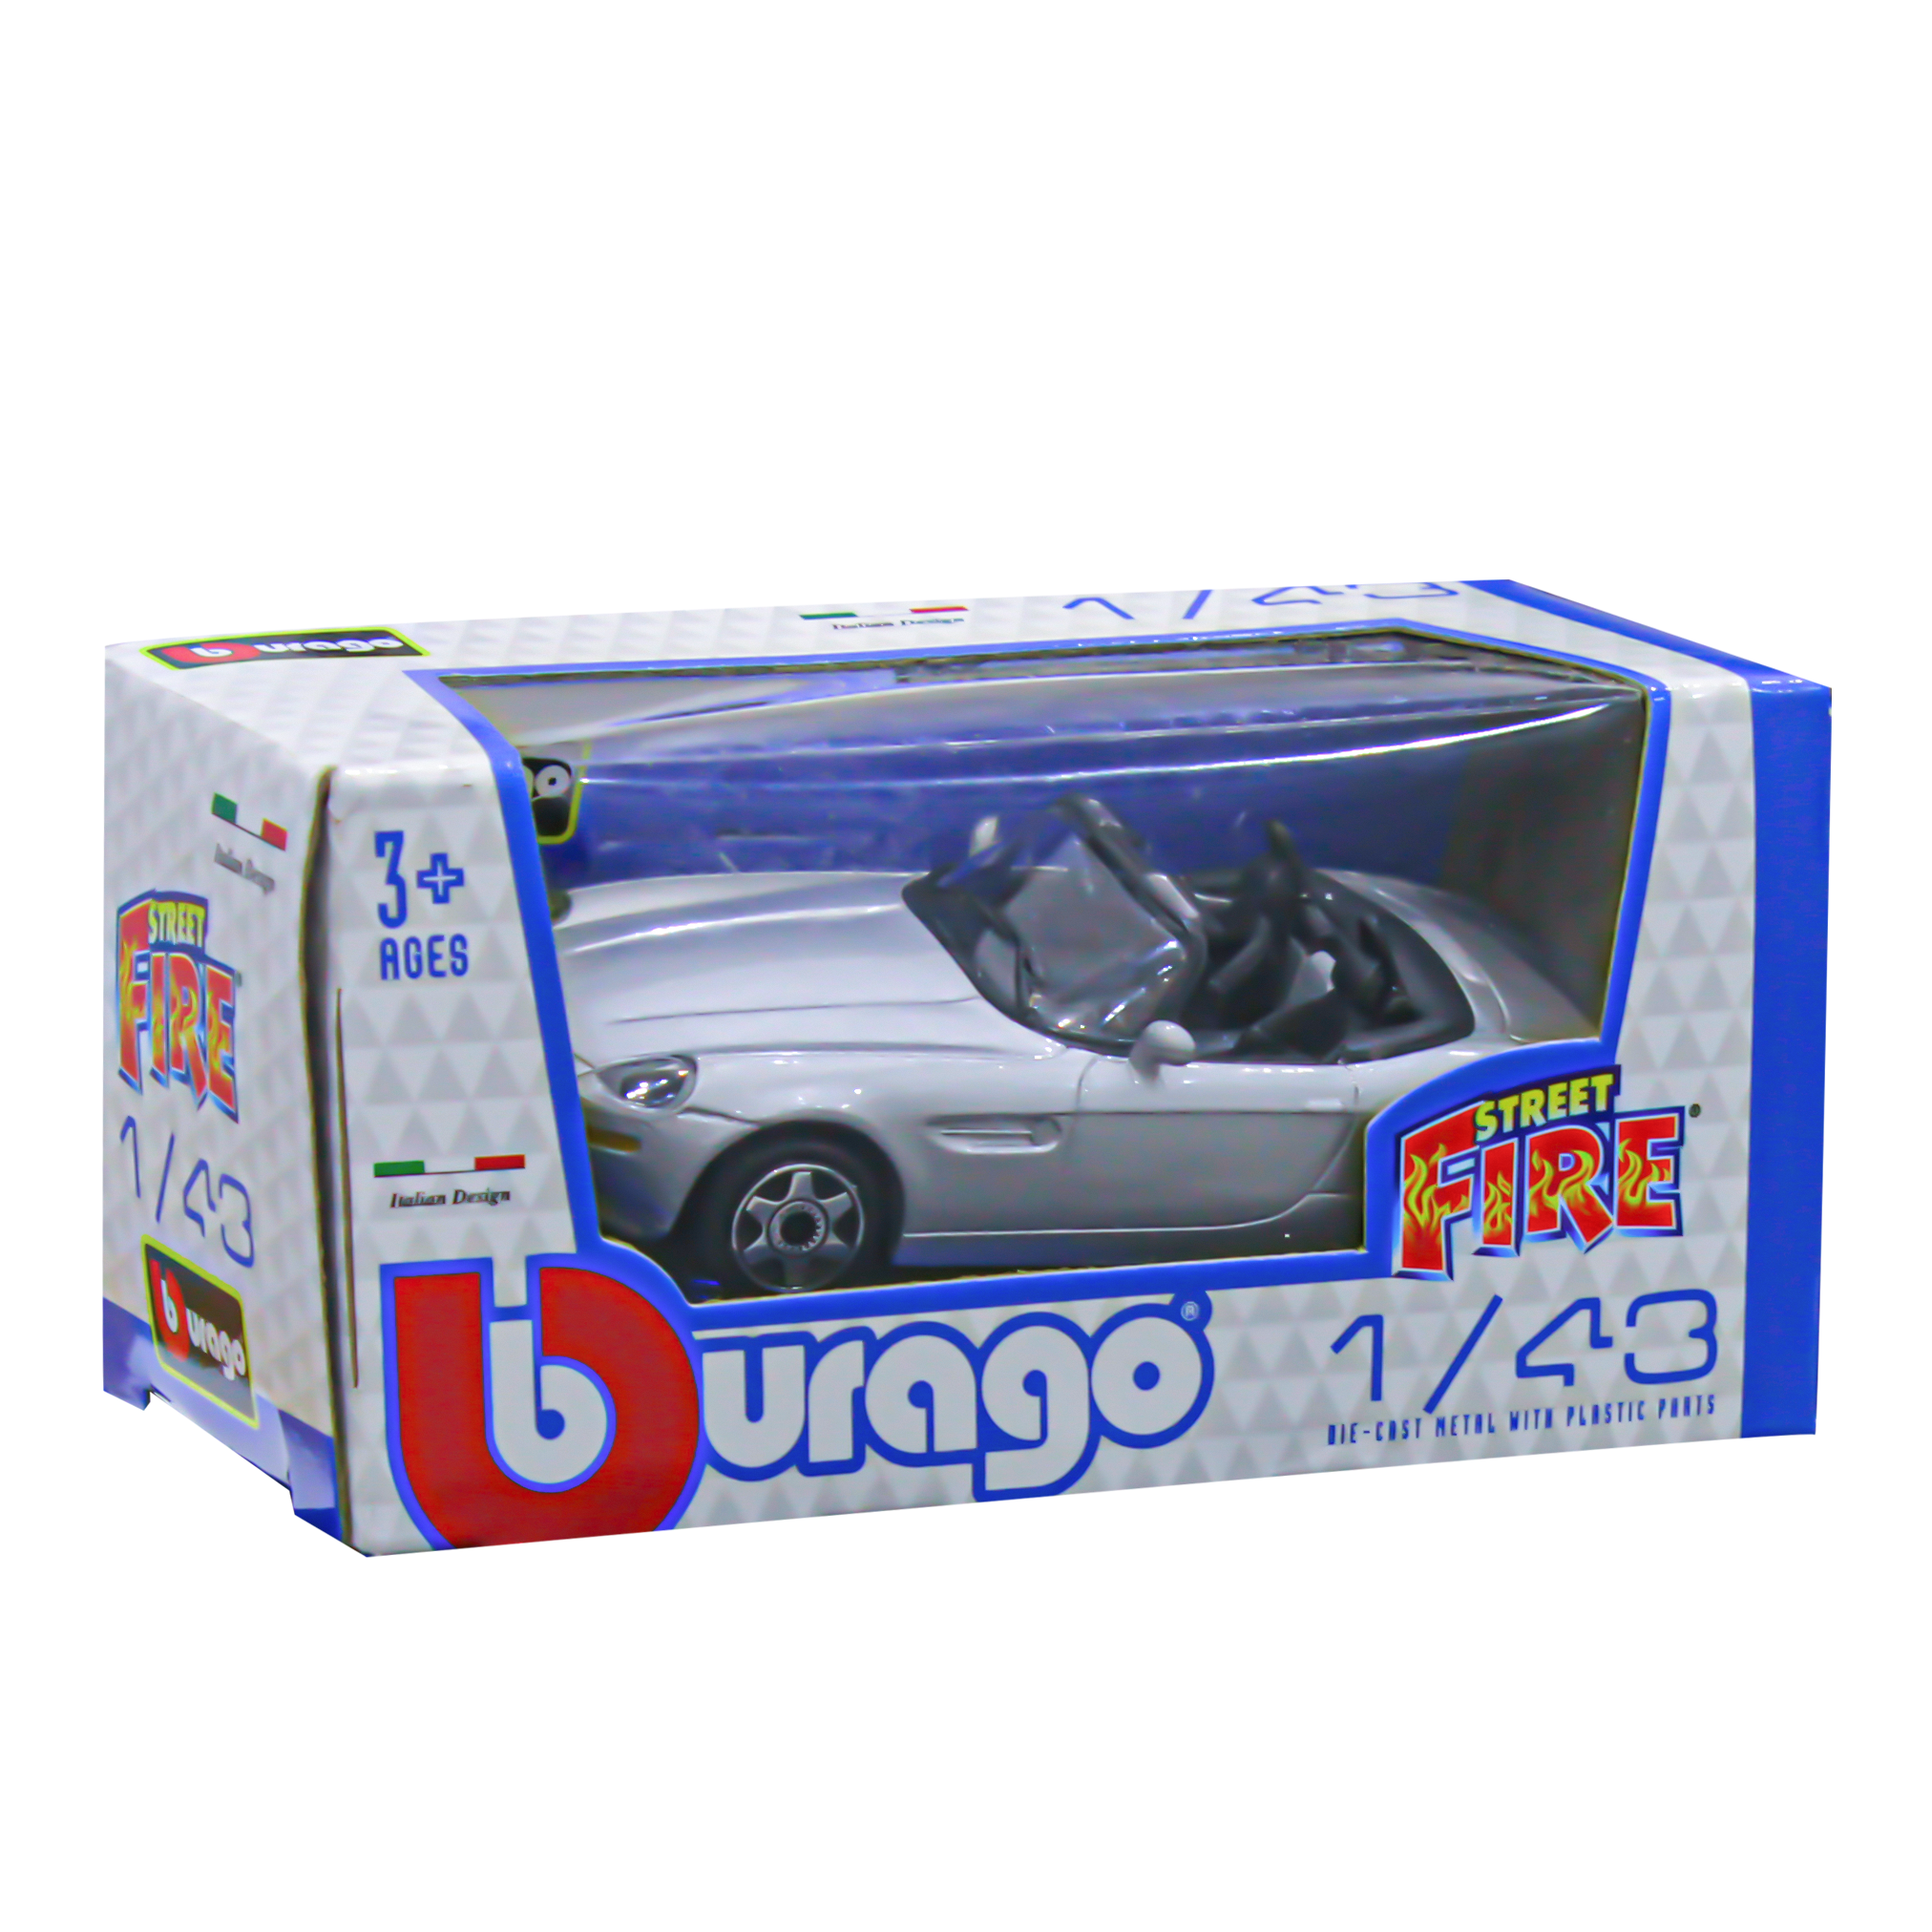 Burago Fire Street Car - BMW Z8